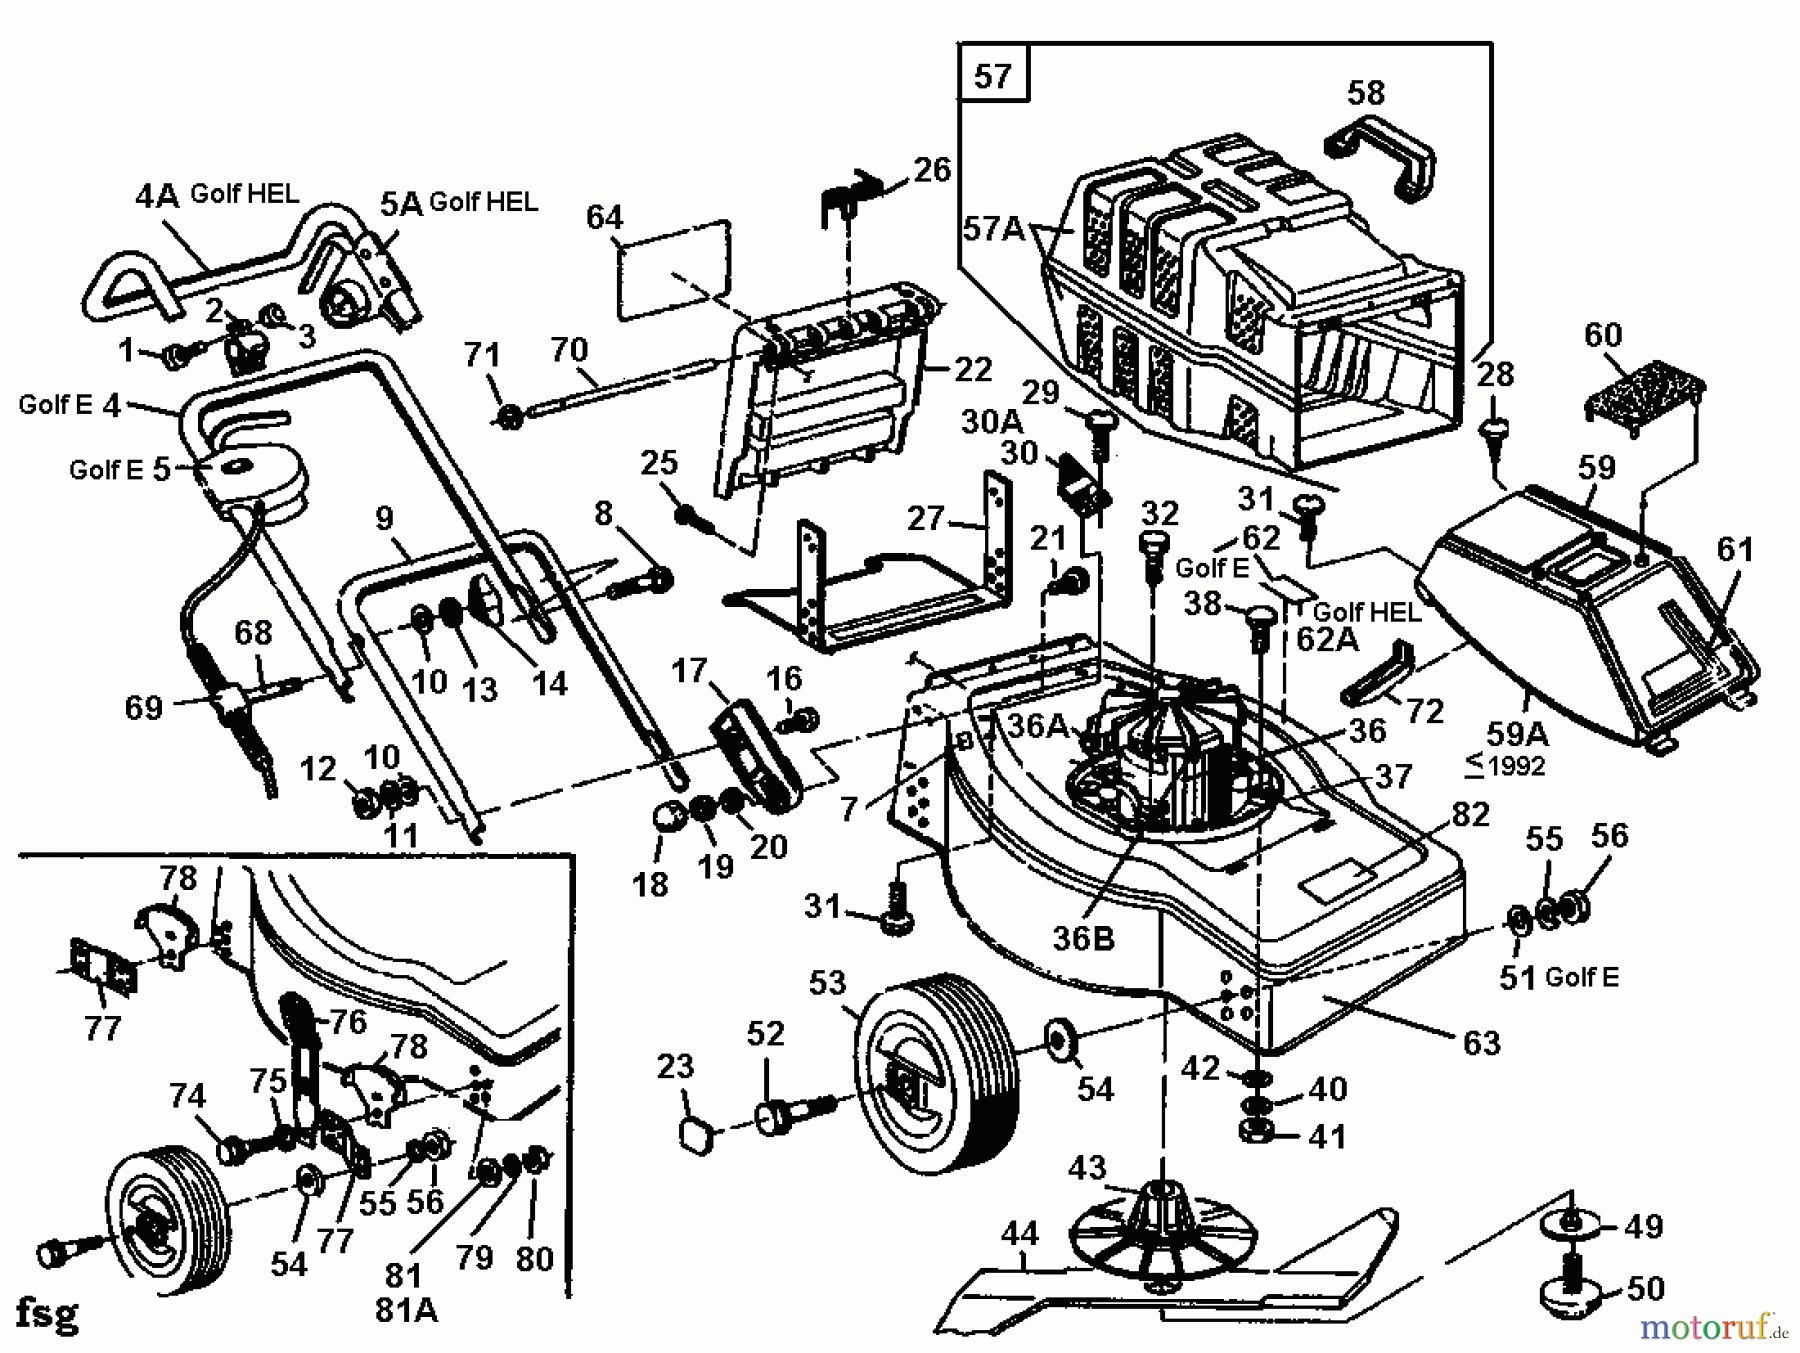  Golf Tondeuse électrique E 02881.06  (1991) Machine de base